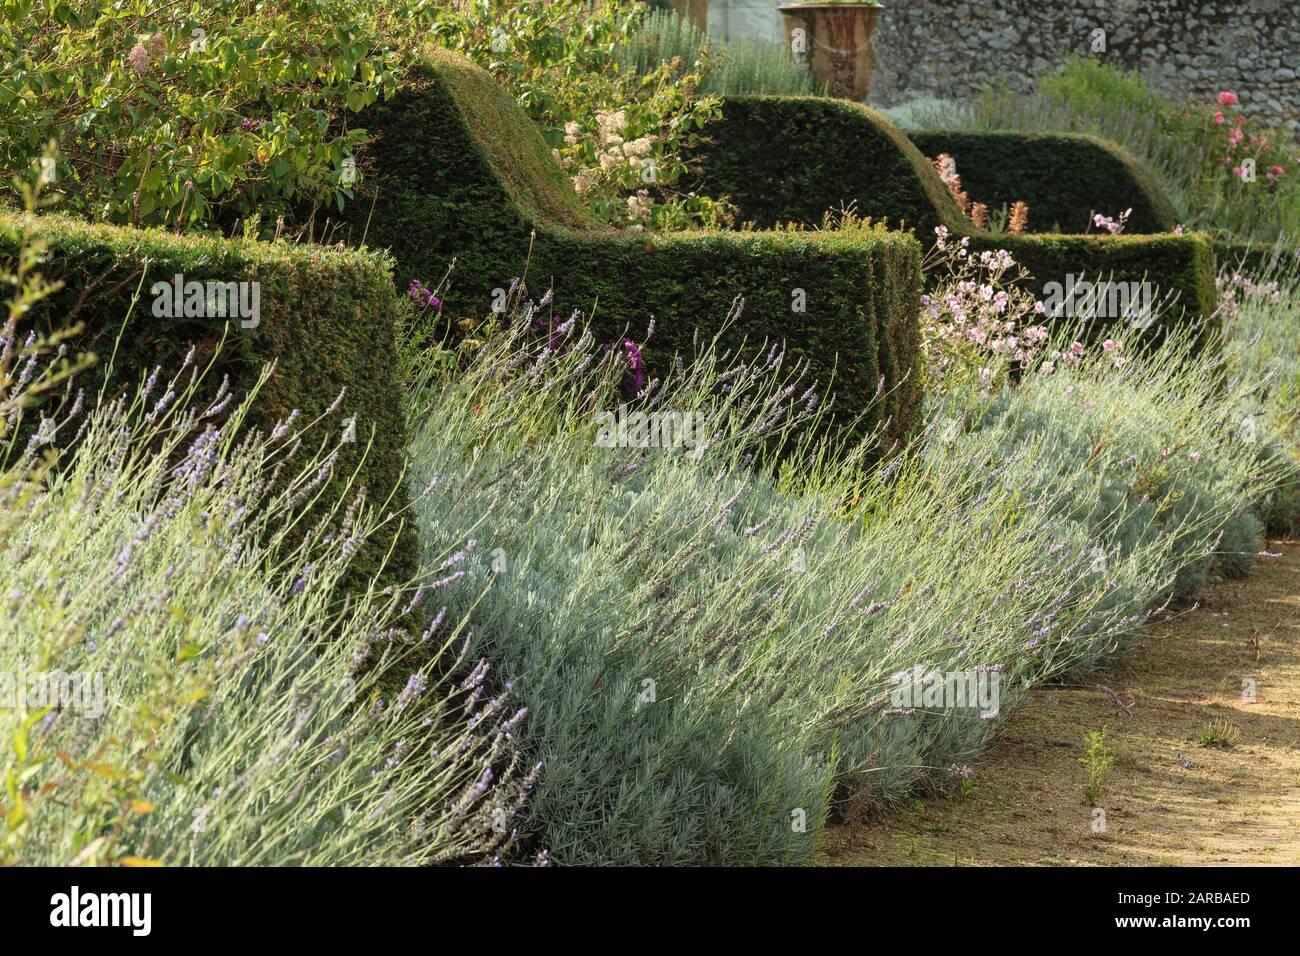 Francia, Indre et Loire, Chancay, Chateau de Valmer giardini, nel giardino di verdure, yew contrafforte contro il muro della terrazza (menzione obbligatoria Chateau Foto Stock